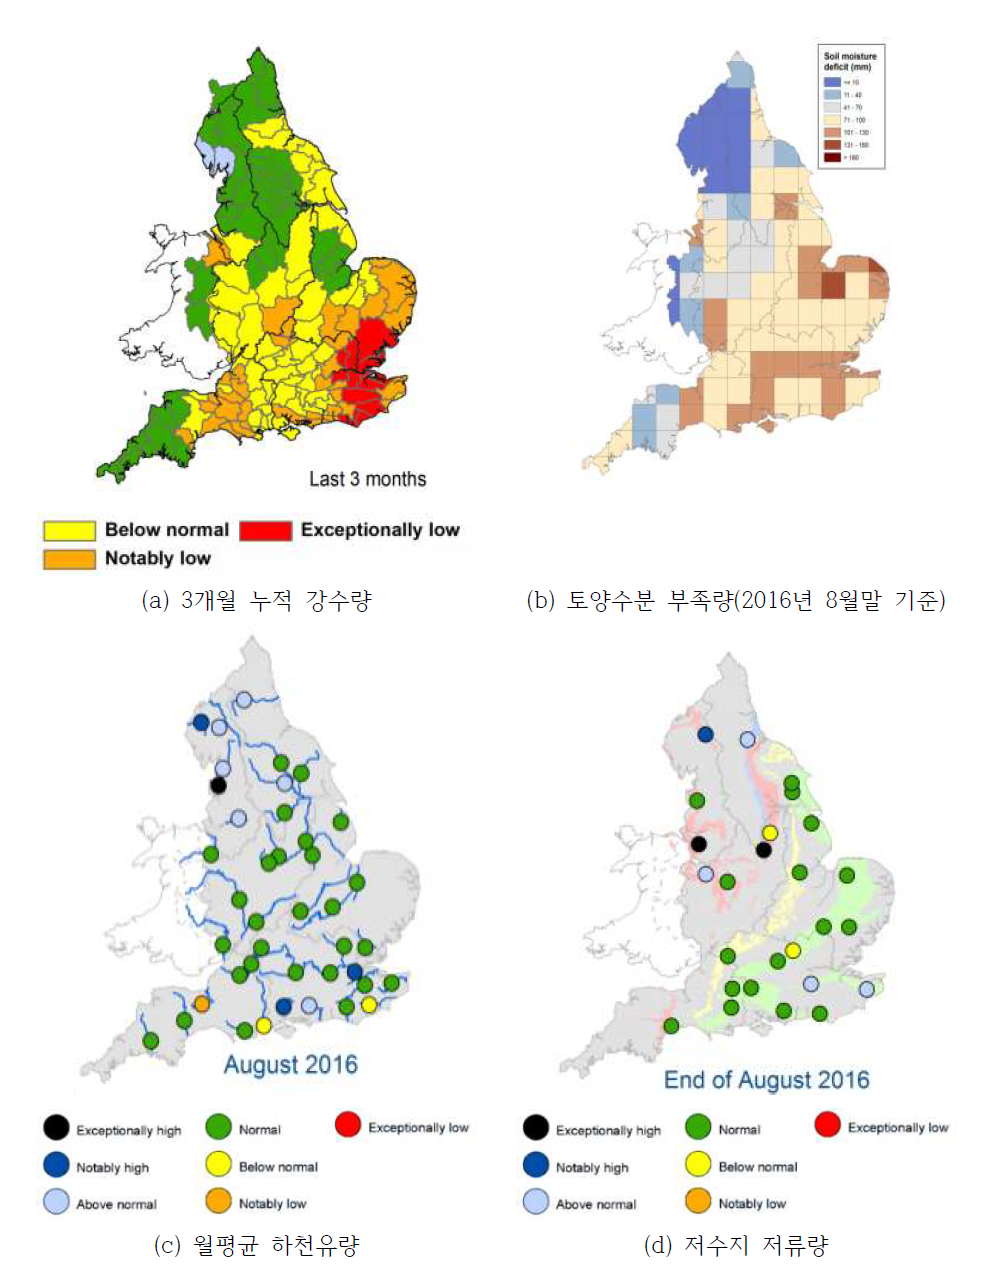 영국의 가뭄 관련기관의 가뭄지수 활용 현황